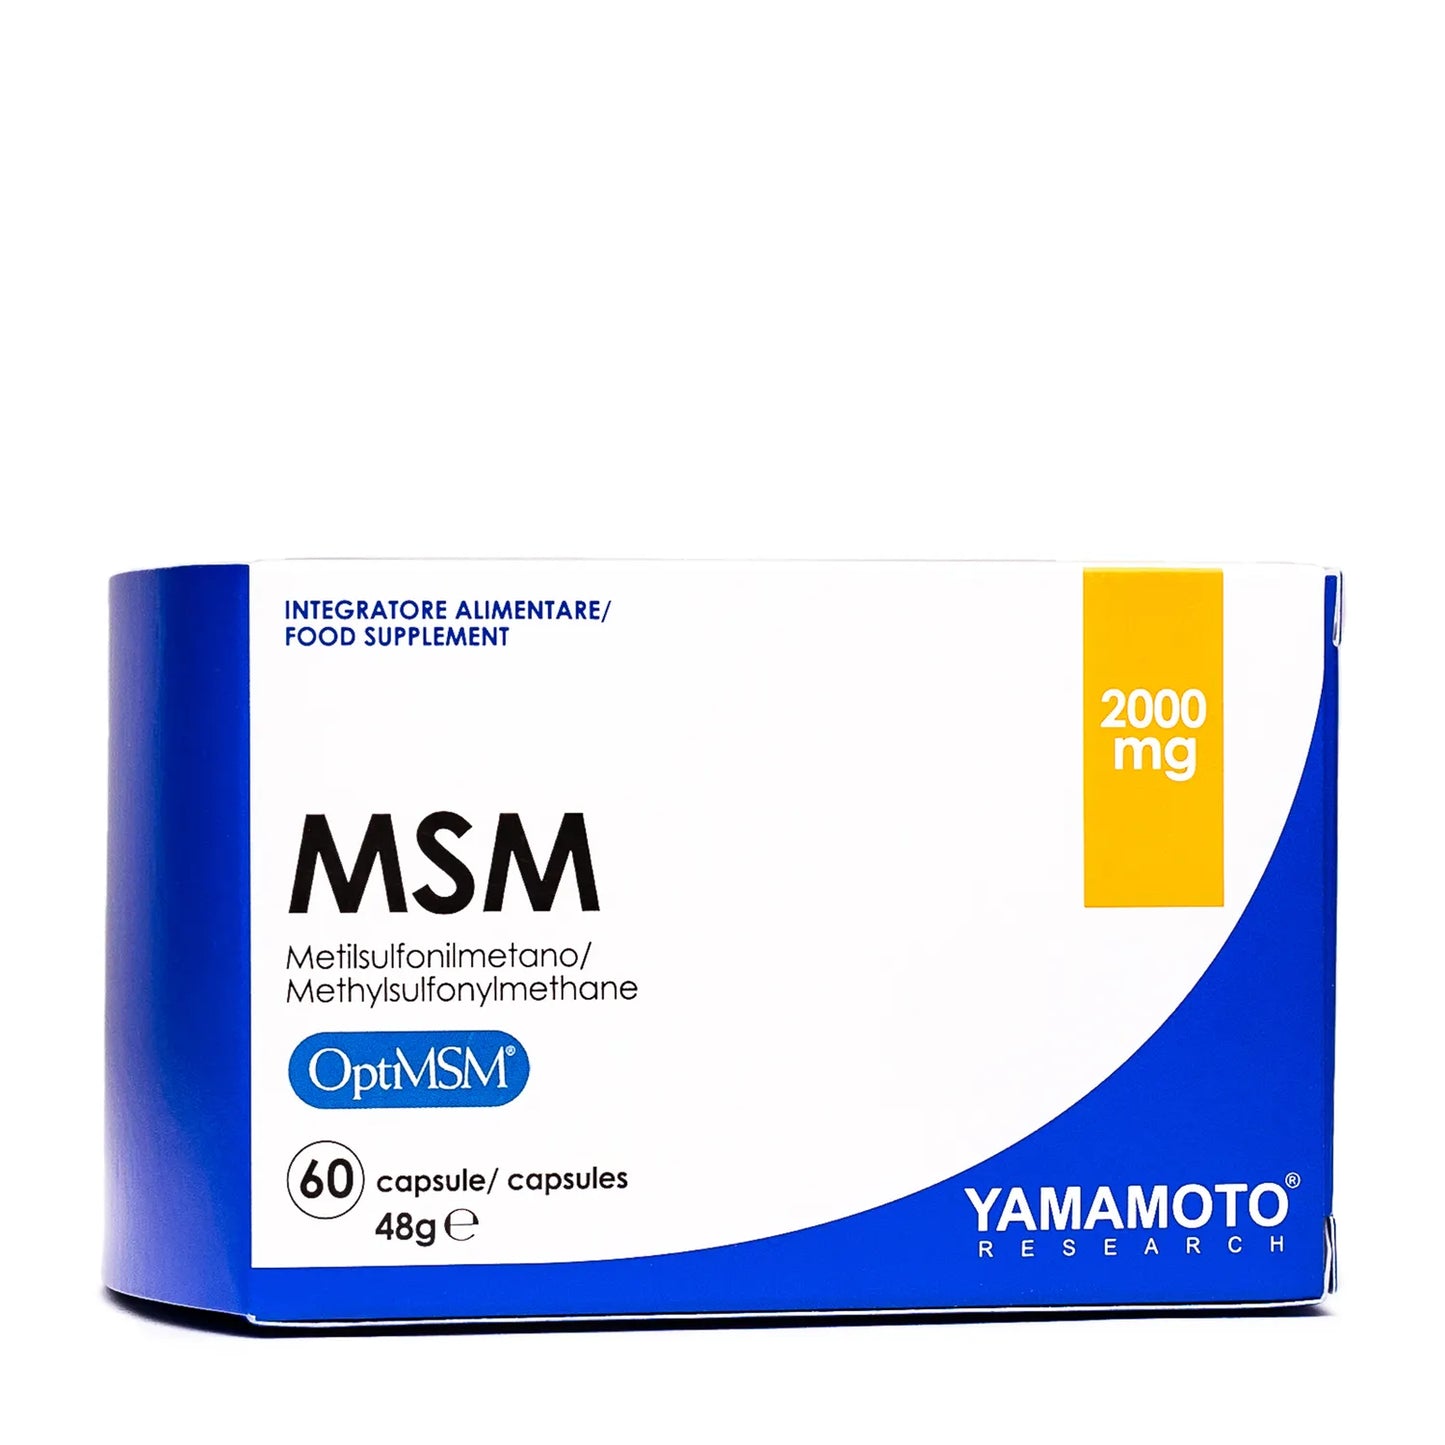 YAMAMOTO - MSM 60cps